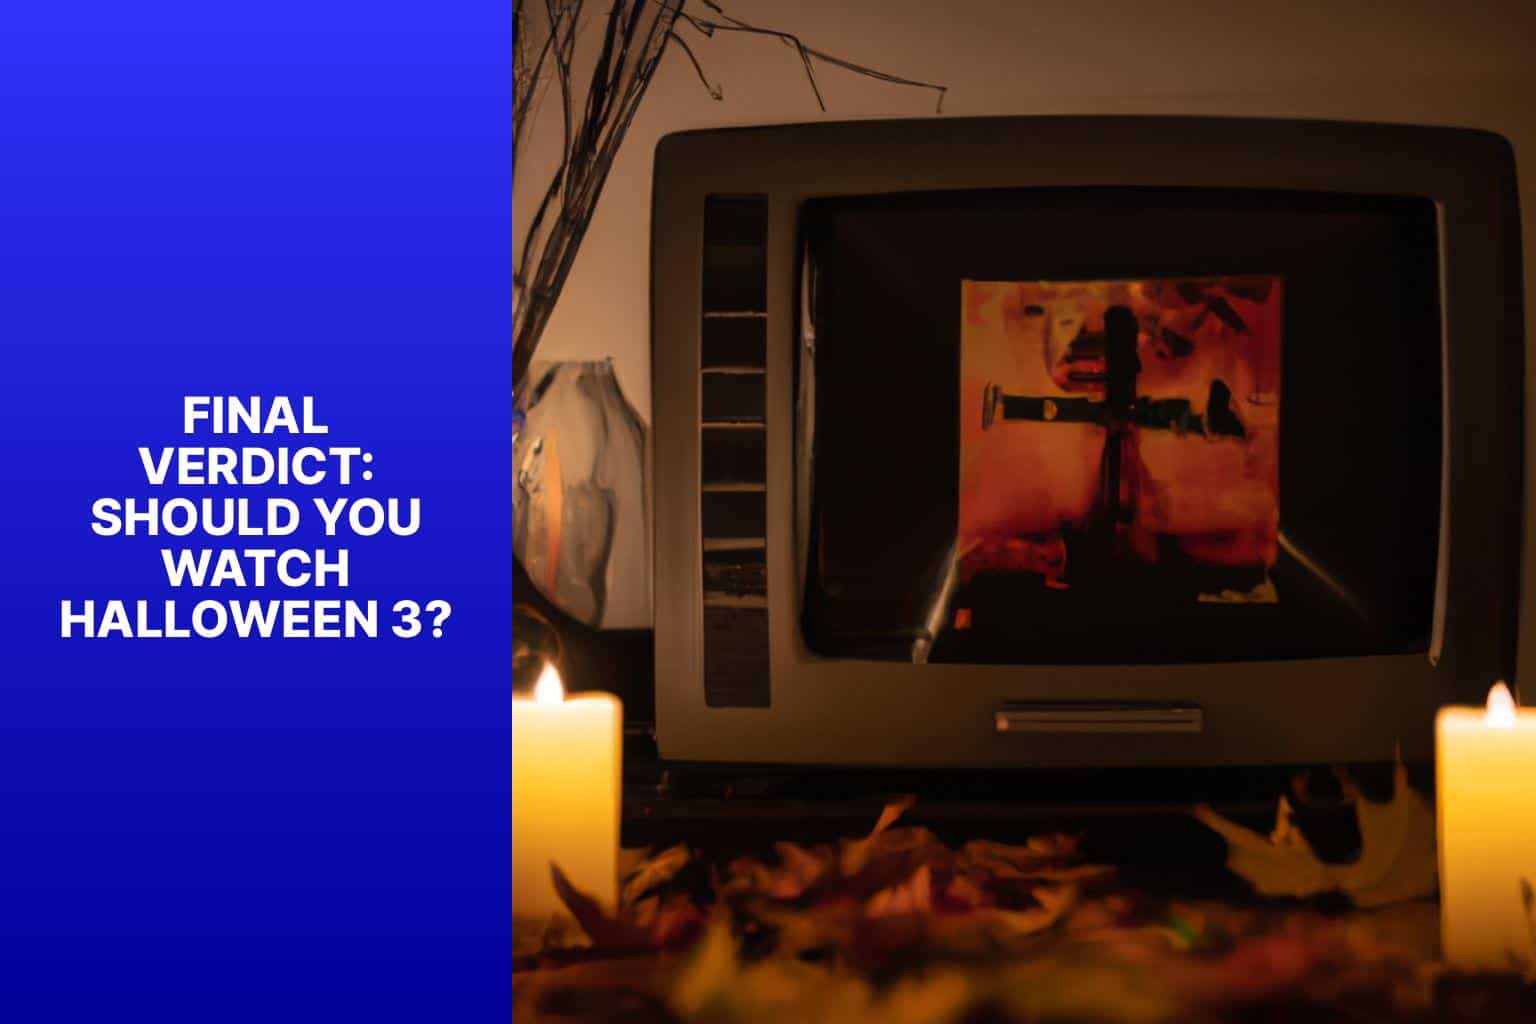 Final Verdict: Should You Watch Halloween 3? - should i watch halloween 3 